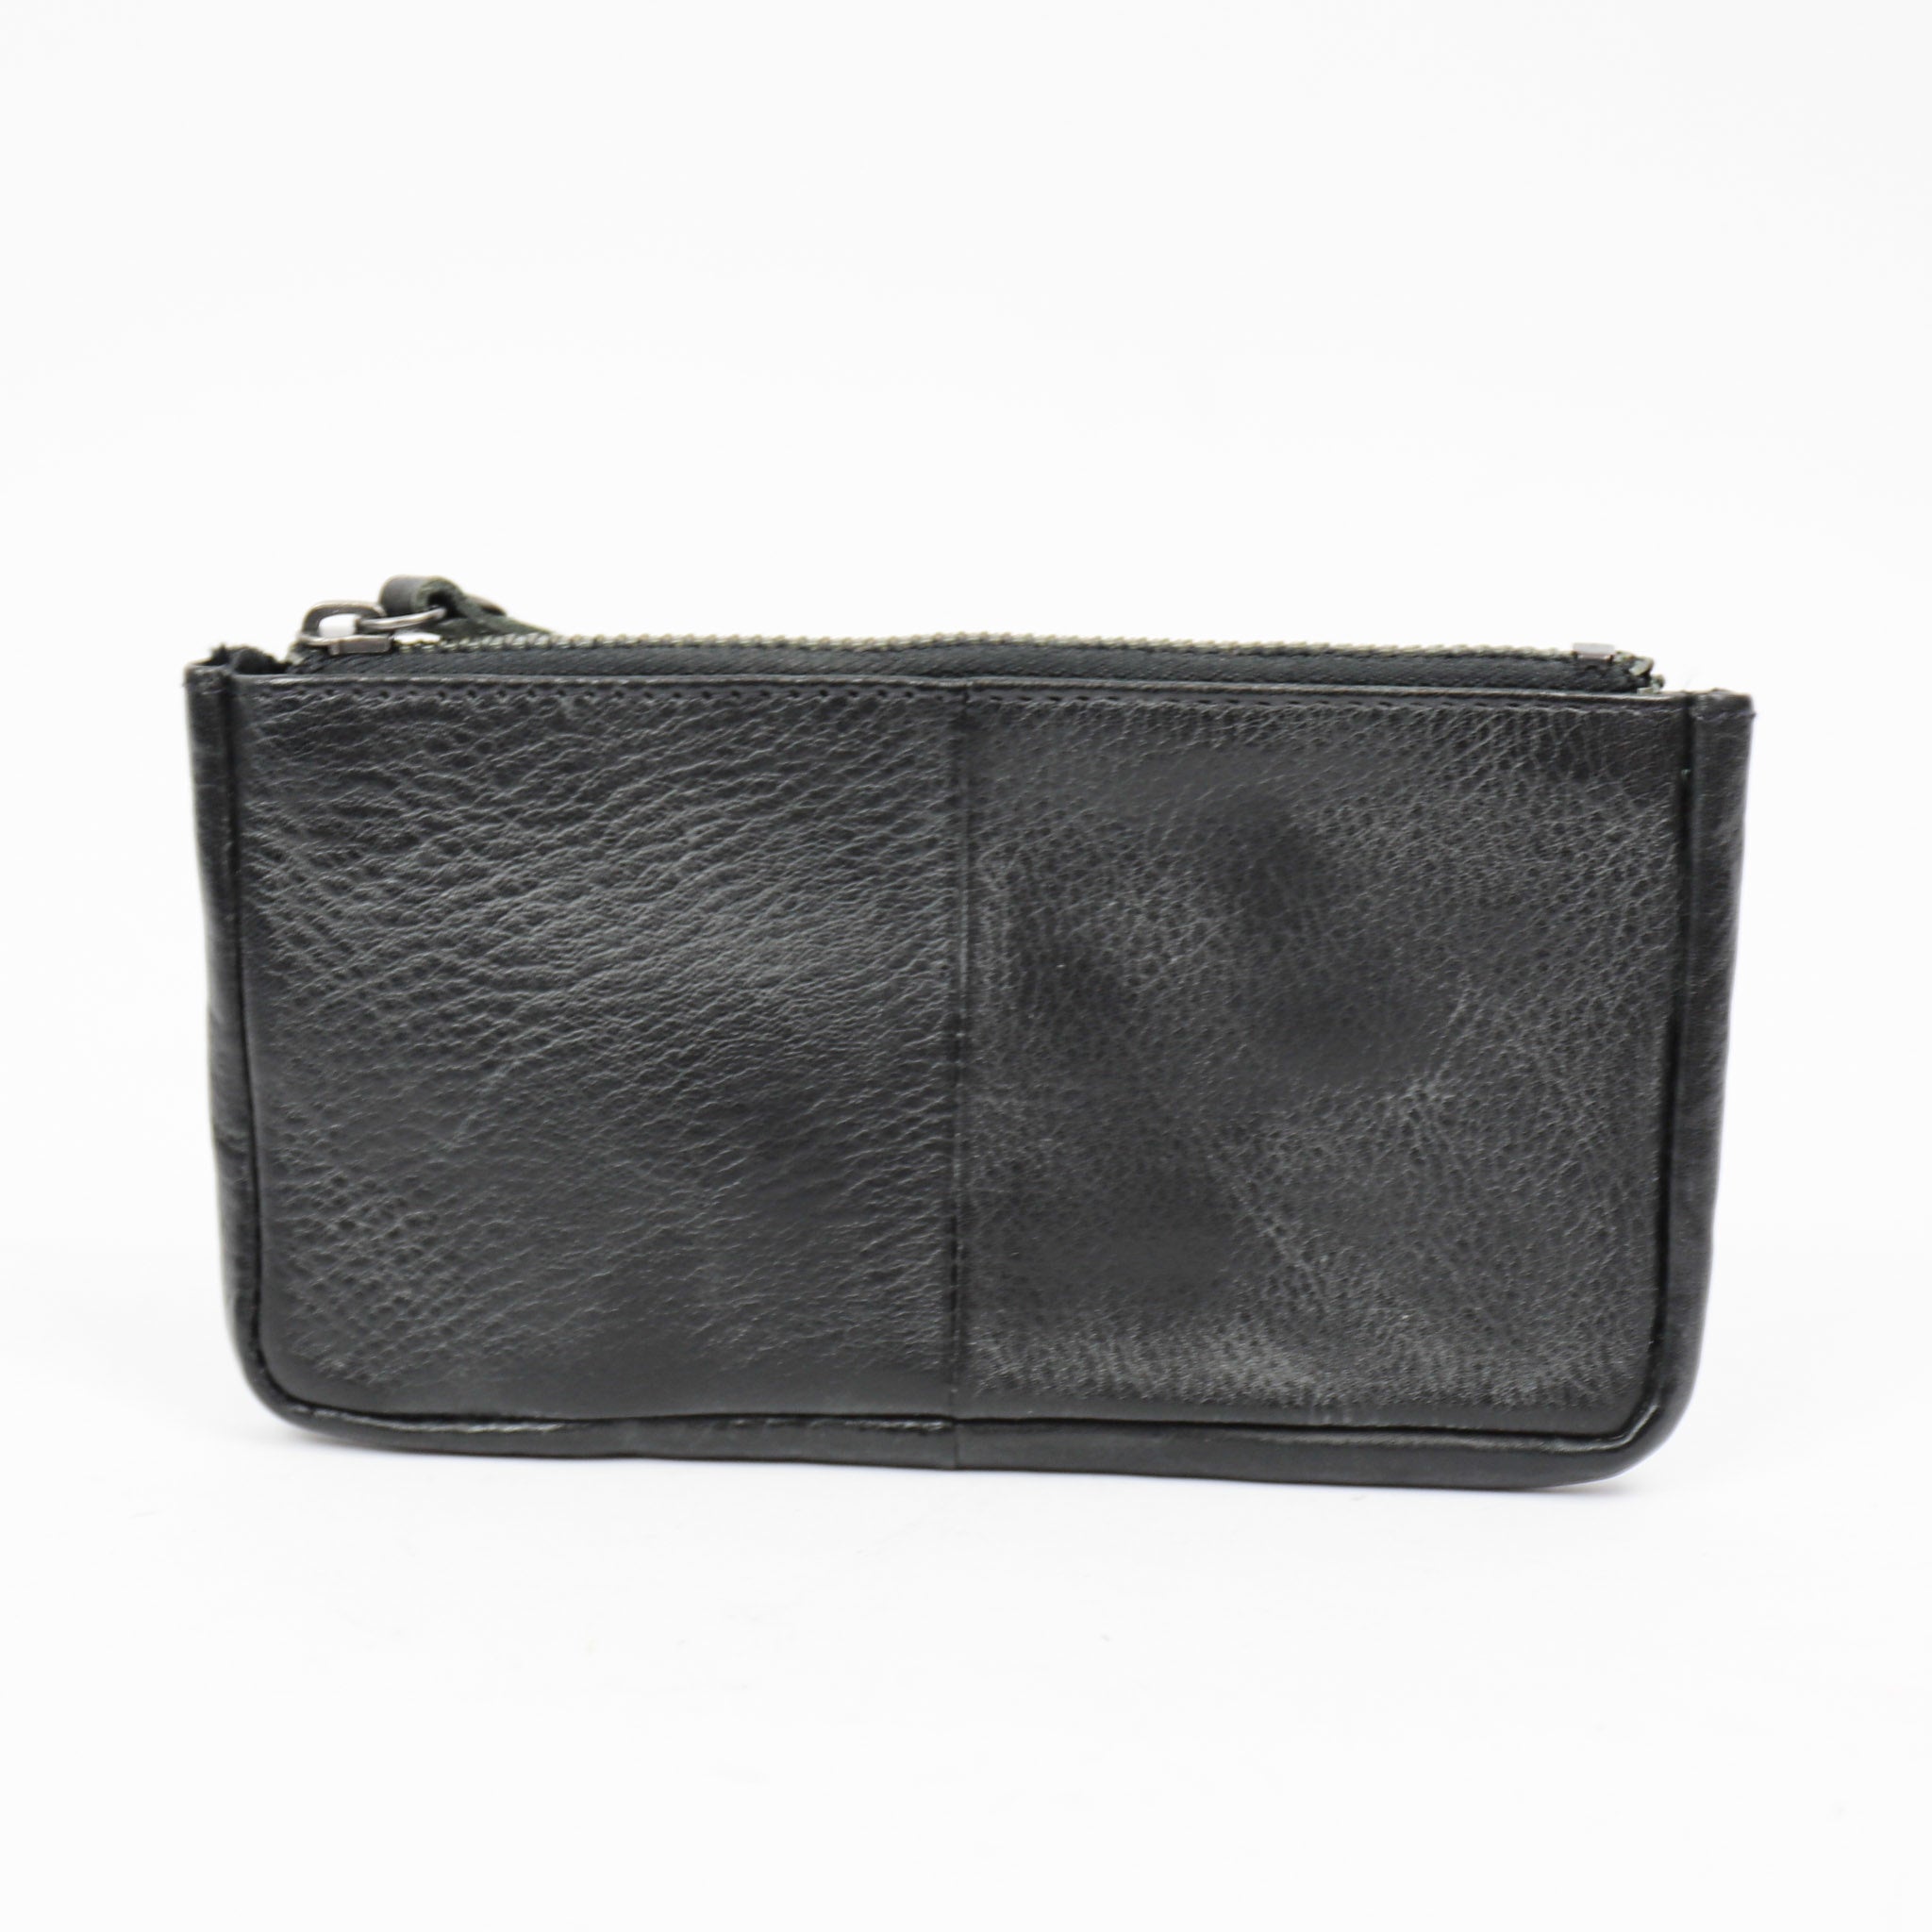 Key pouch 'Mila' black - CP 7090